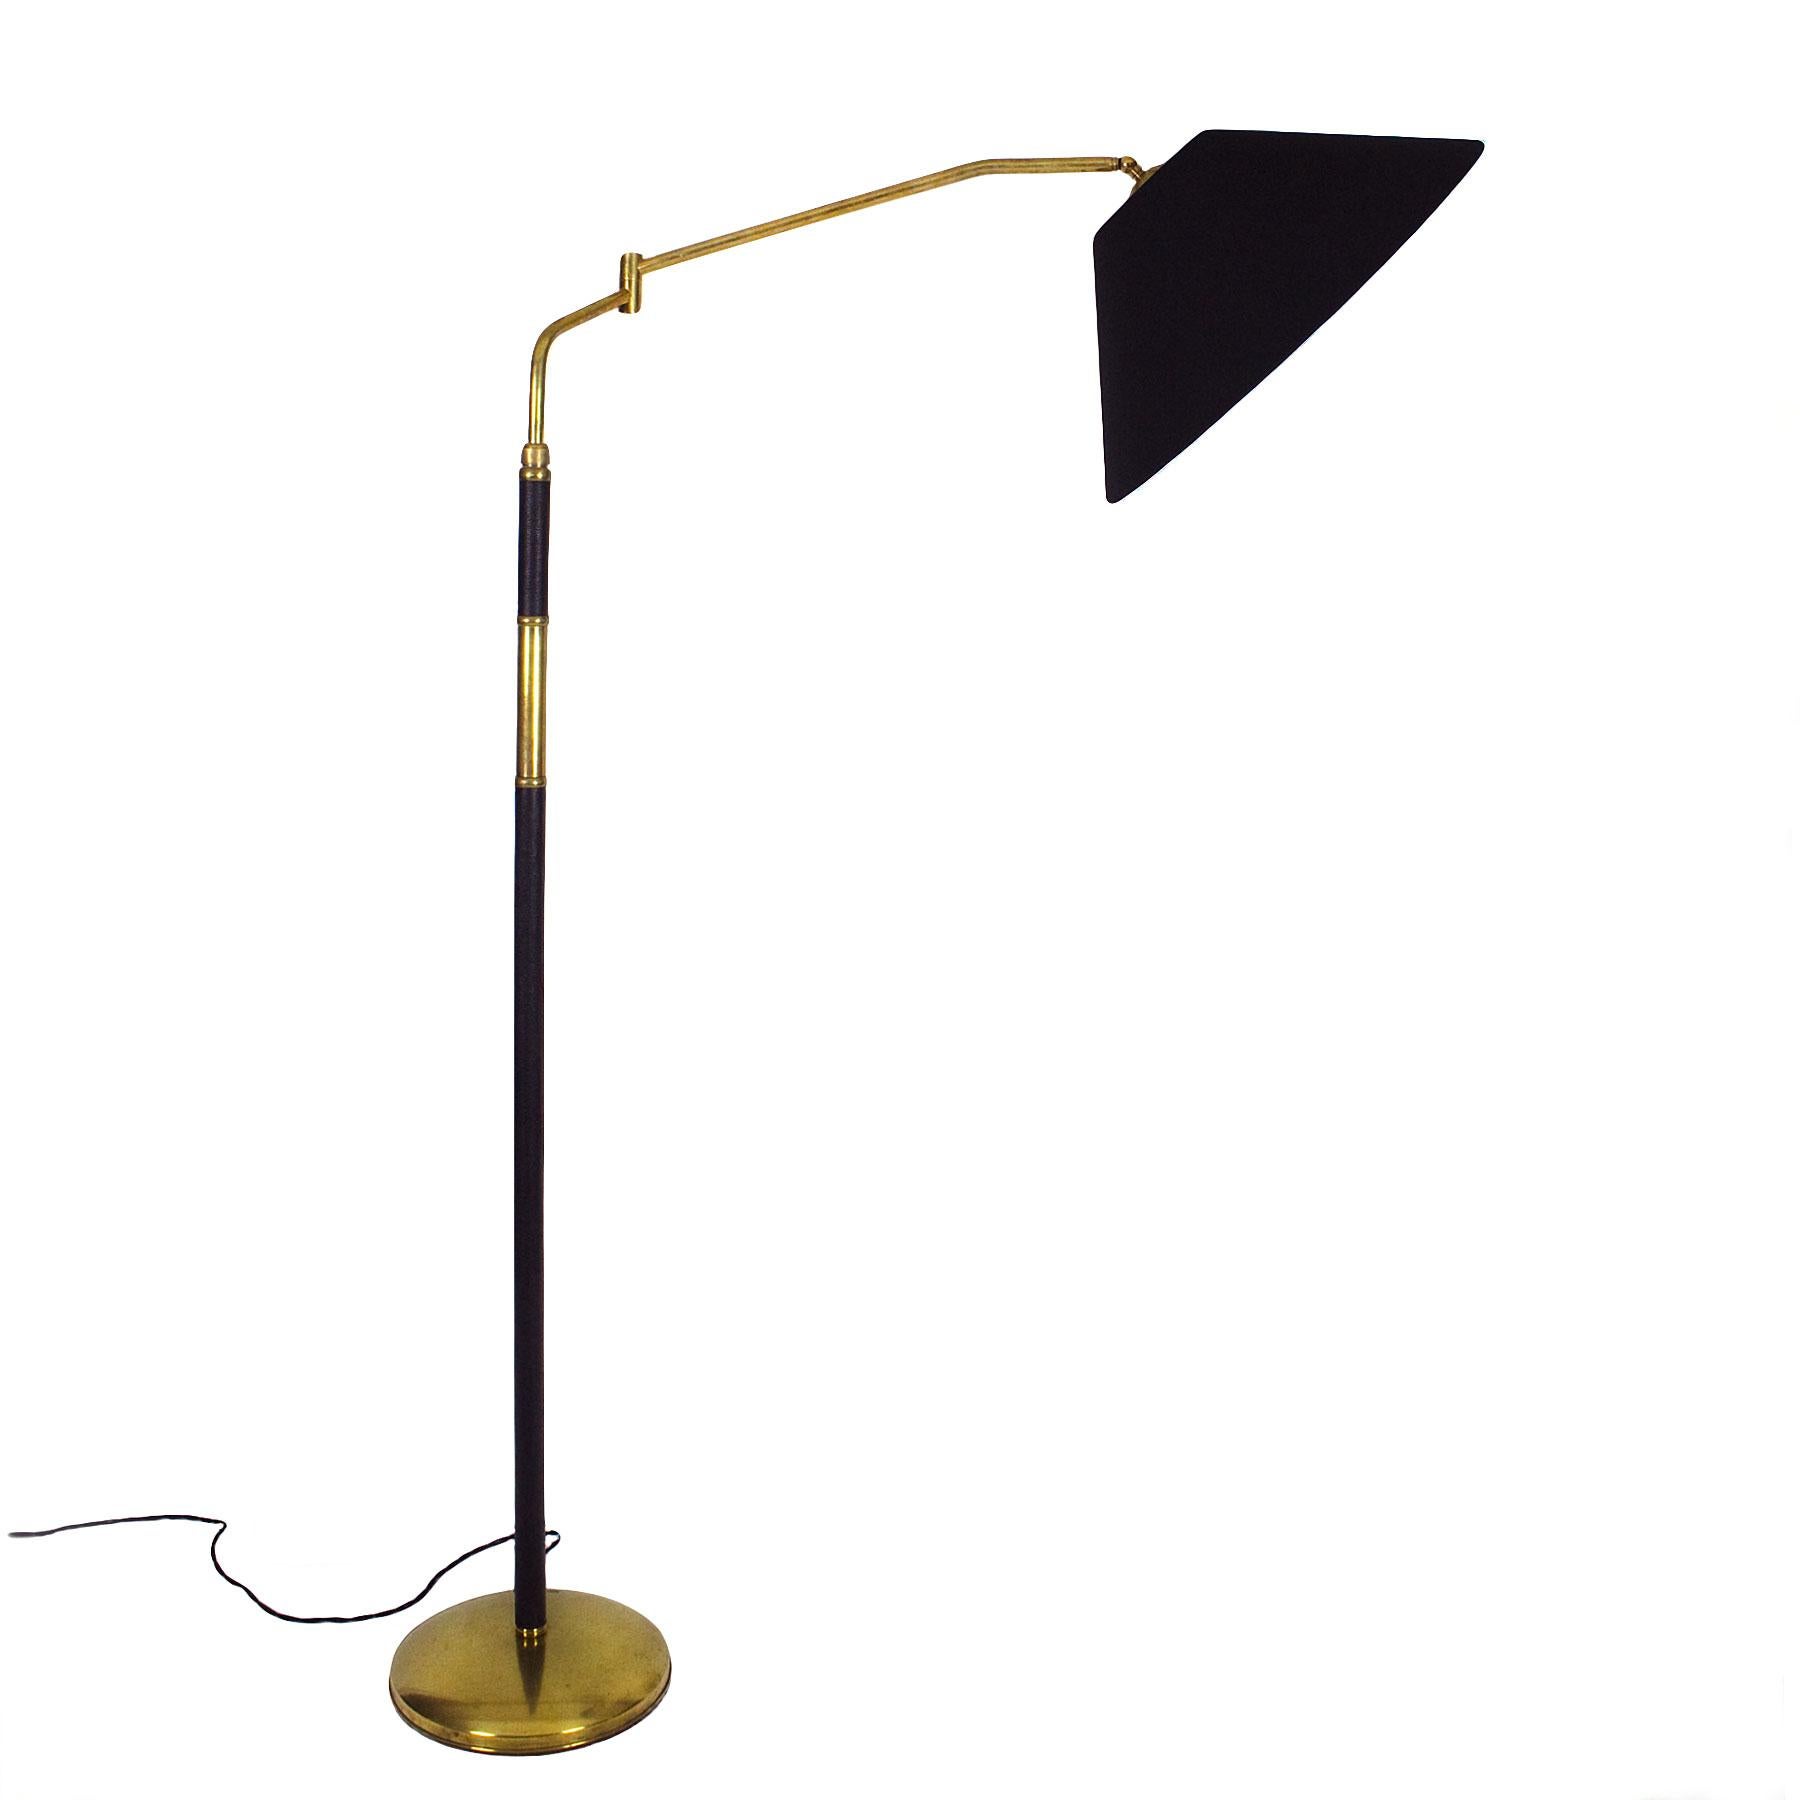 Elegantes System Stehlampe aus poliertem Messing, ausziehbar, schwenkbar, ausrichtbarer Lampenschirm. Ständer teilweise mit Leder bezogen, Originalschalter. Neuer schwarzer Chintz und goldener Lampenschirm.

Italien, um 1940.